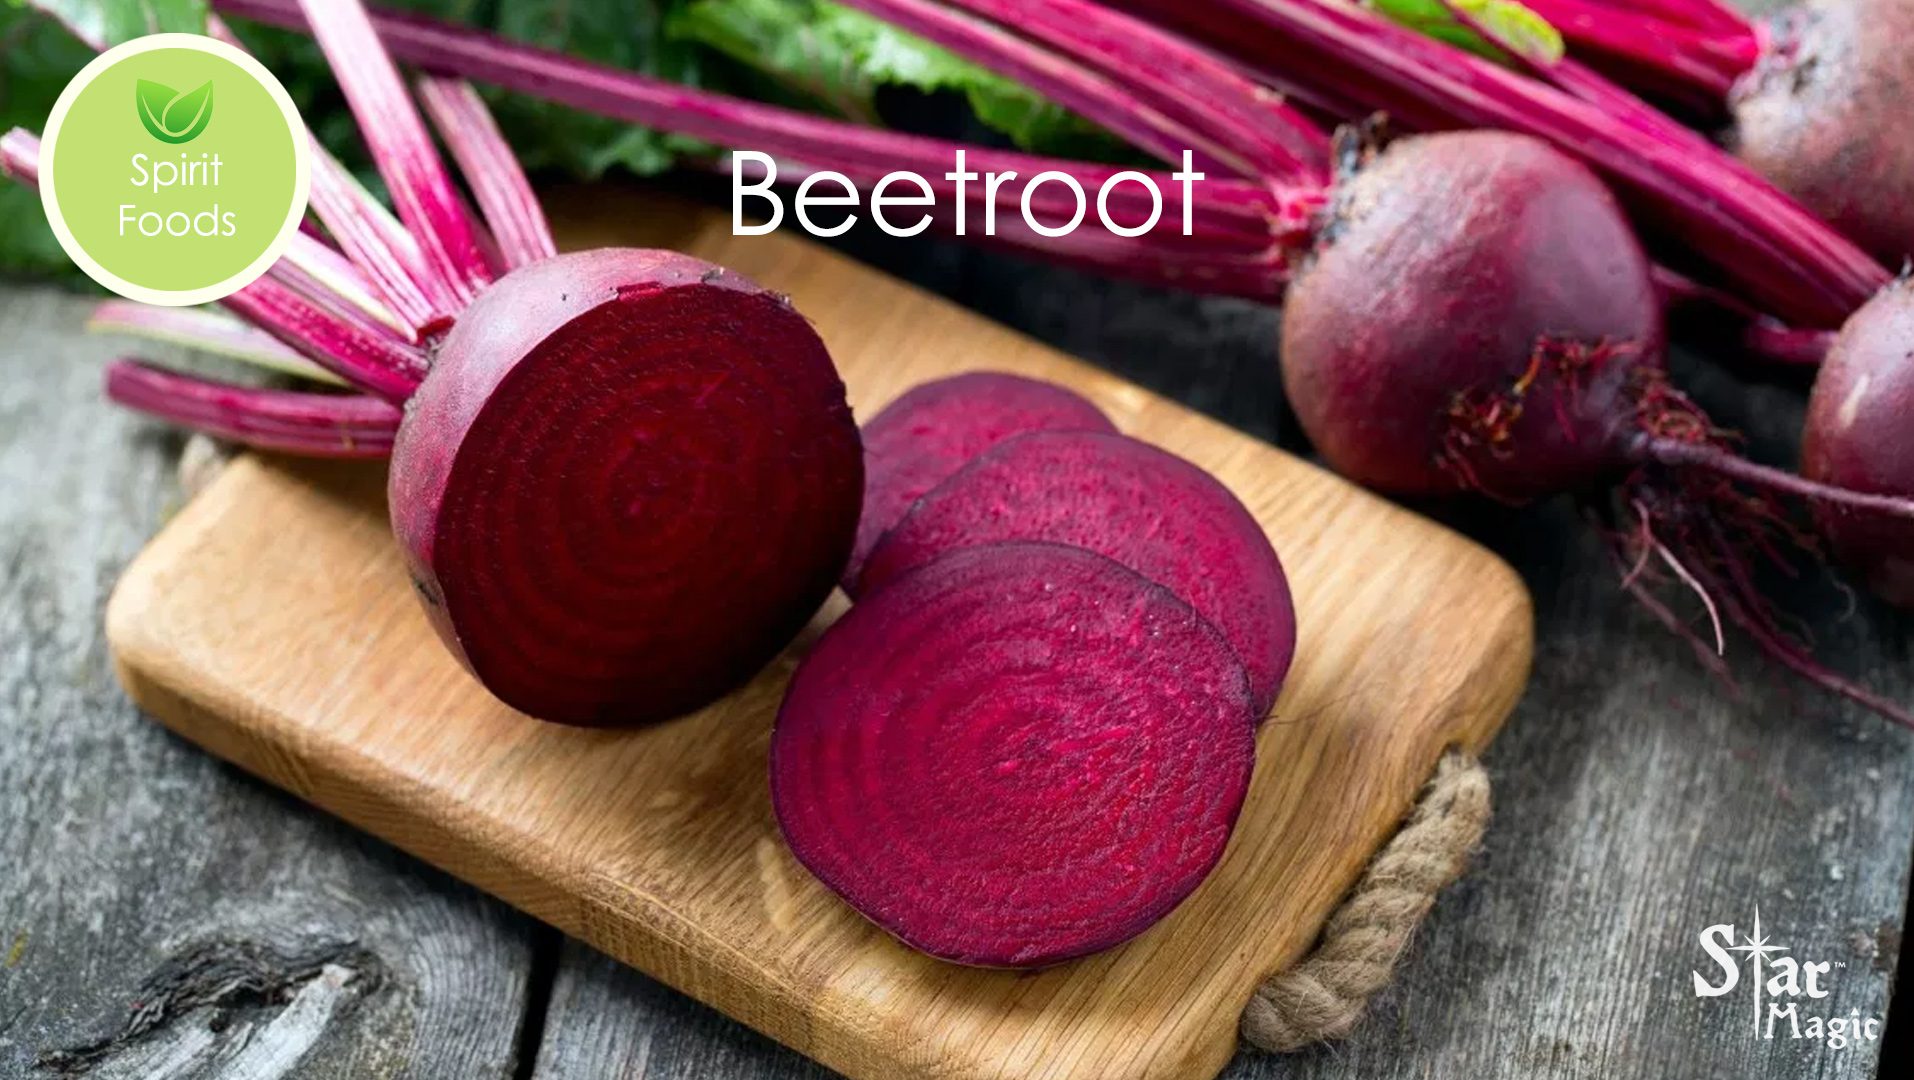 Spirit Food – Beetroot